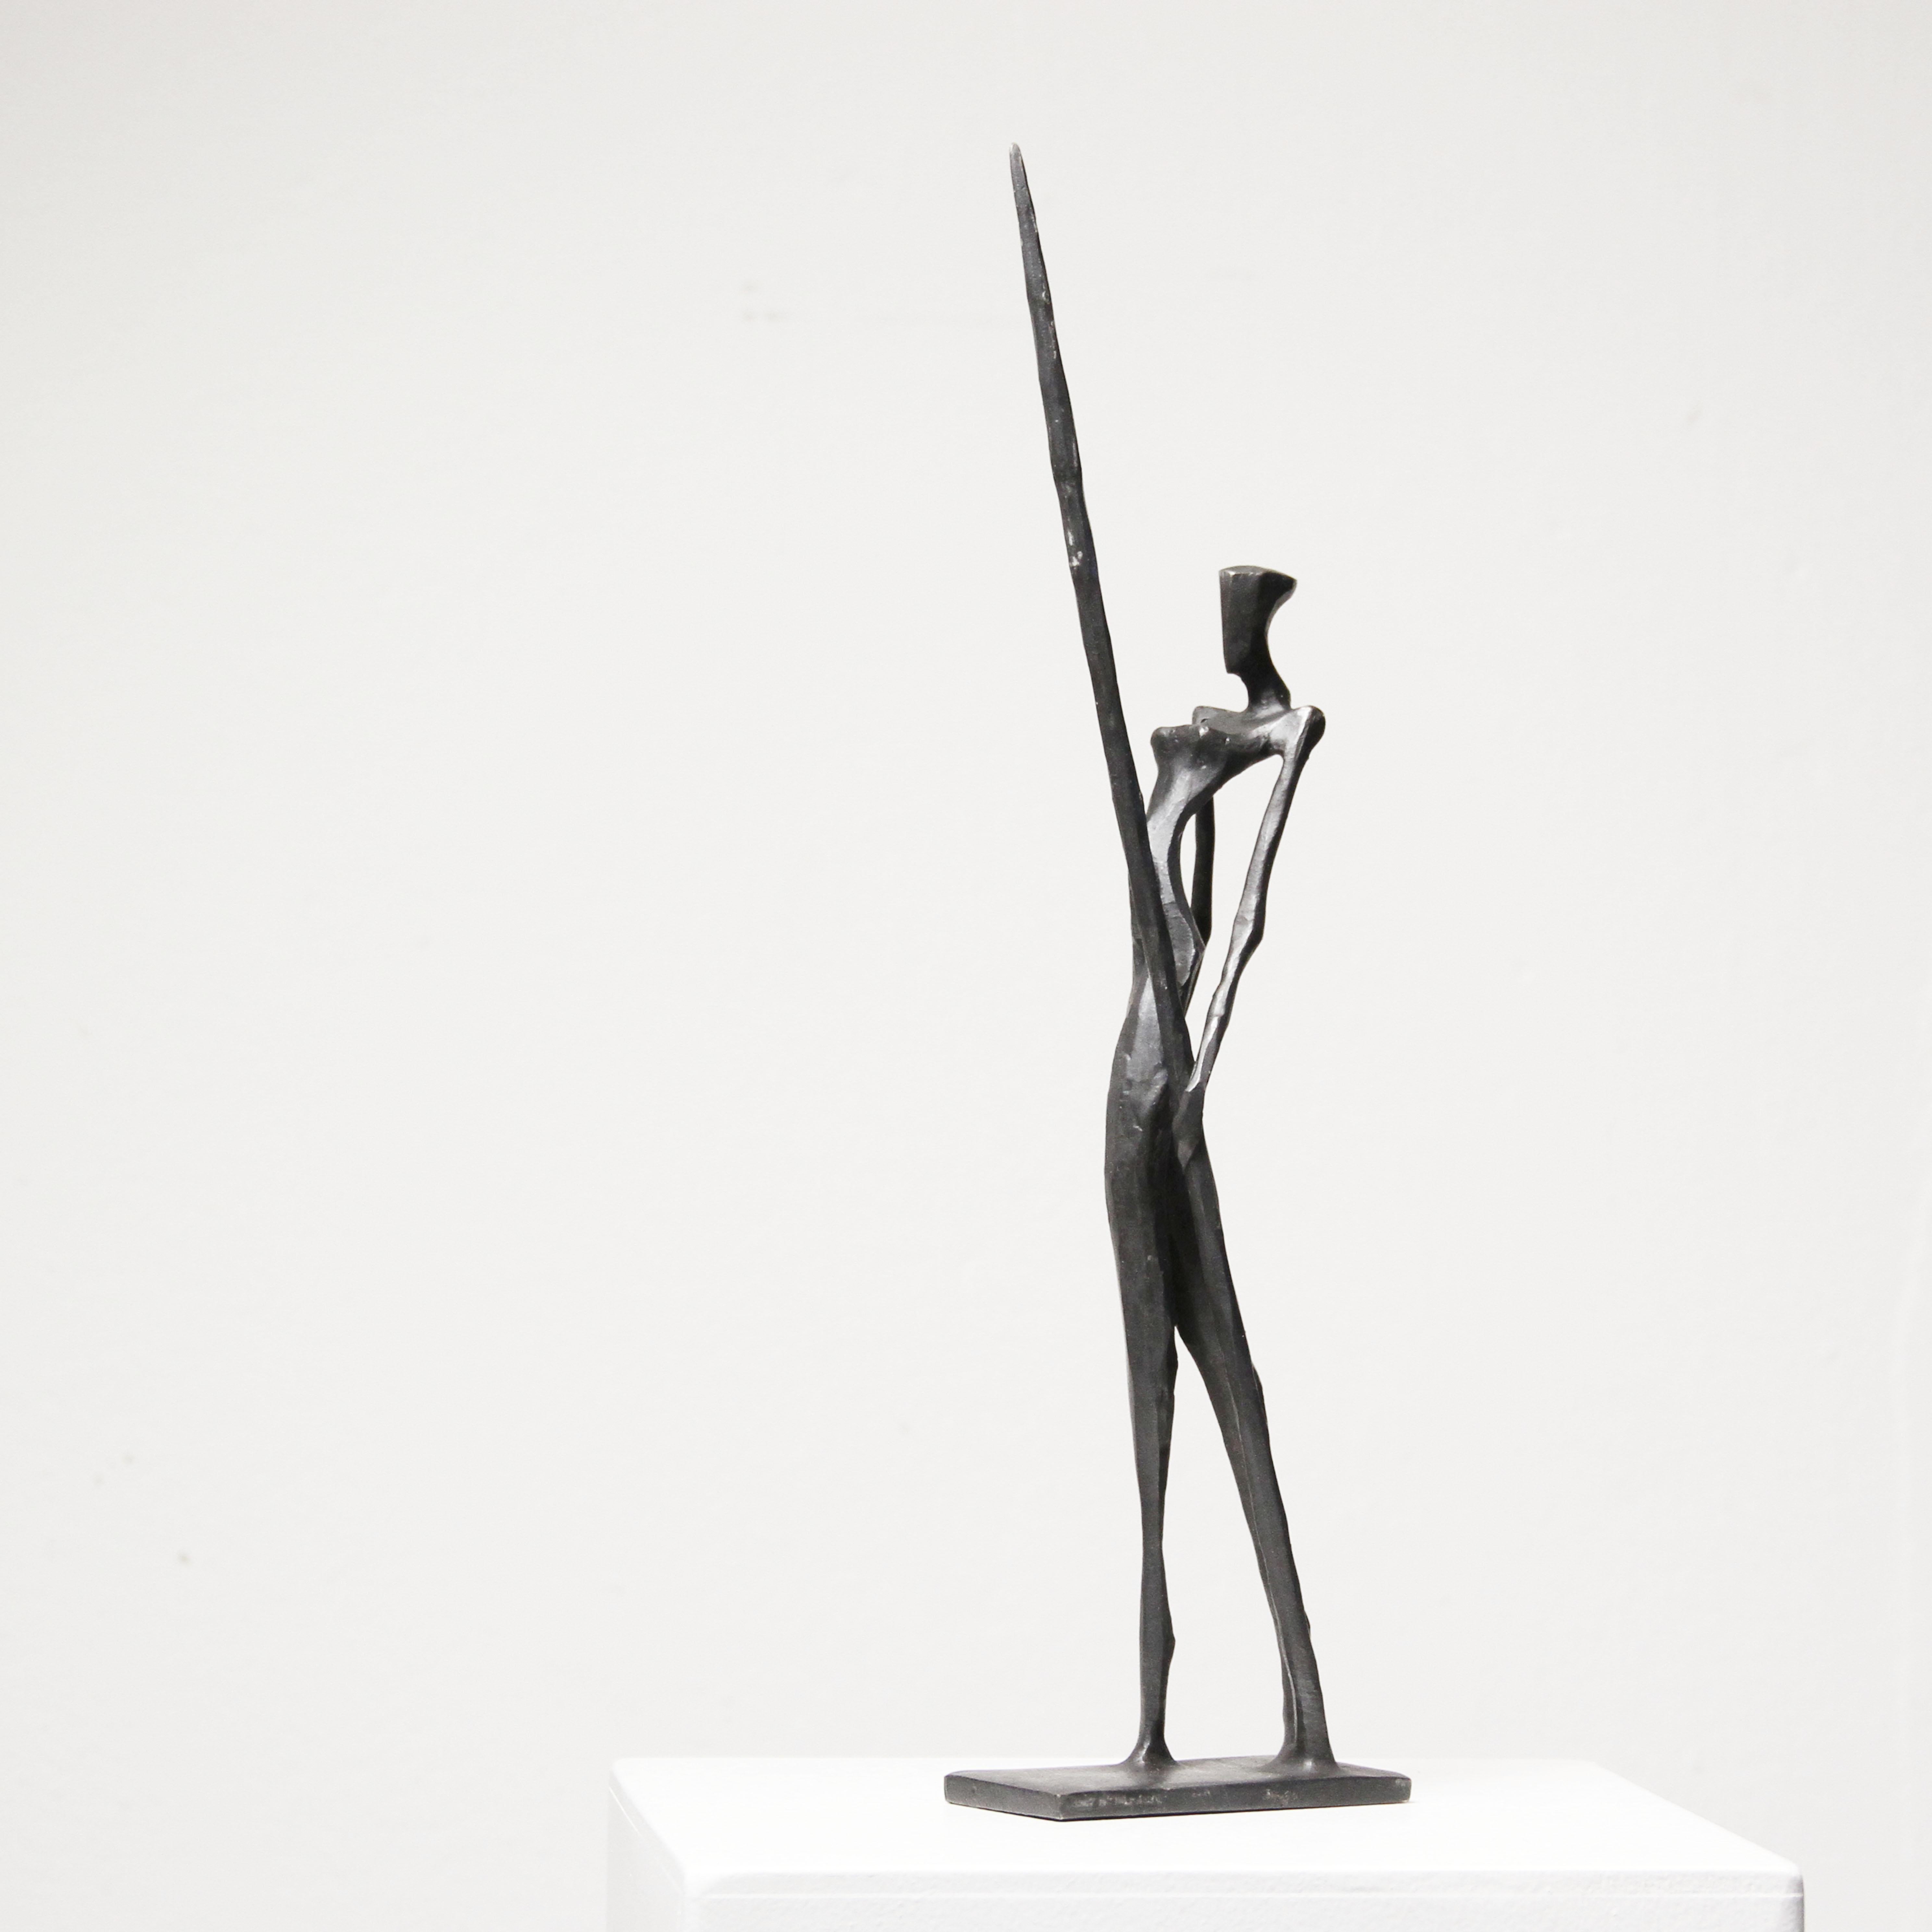 Artemis II ist eine elegante, figurative Bronzeskulptur der weiblichen Form von Nando Kallweit.  Eine Frau trägt einen Speer in der Pose einer stolzen Kriegerin.

Artemis II wird in einer Auflage von 25 Stück hergestellt.  Nando hämmert sein Zeichen